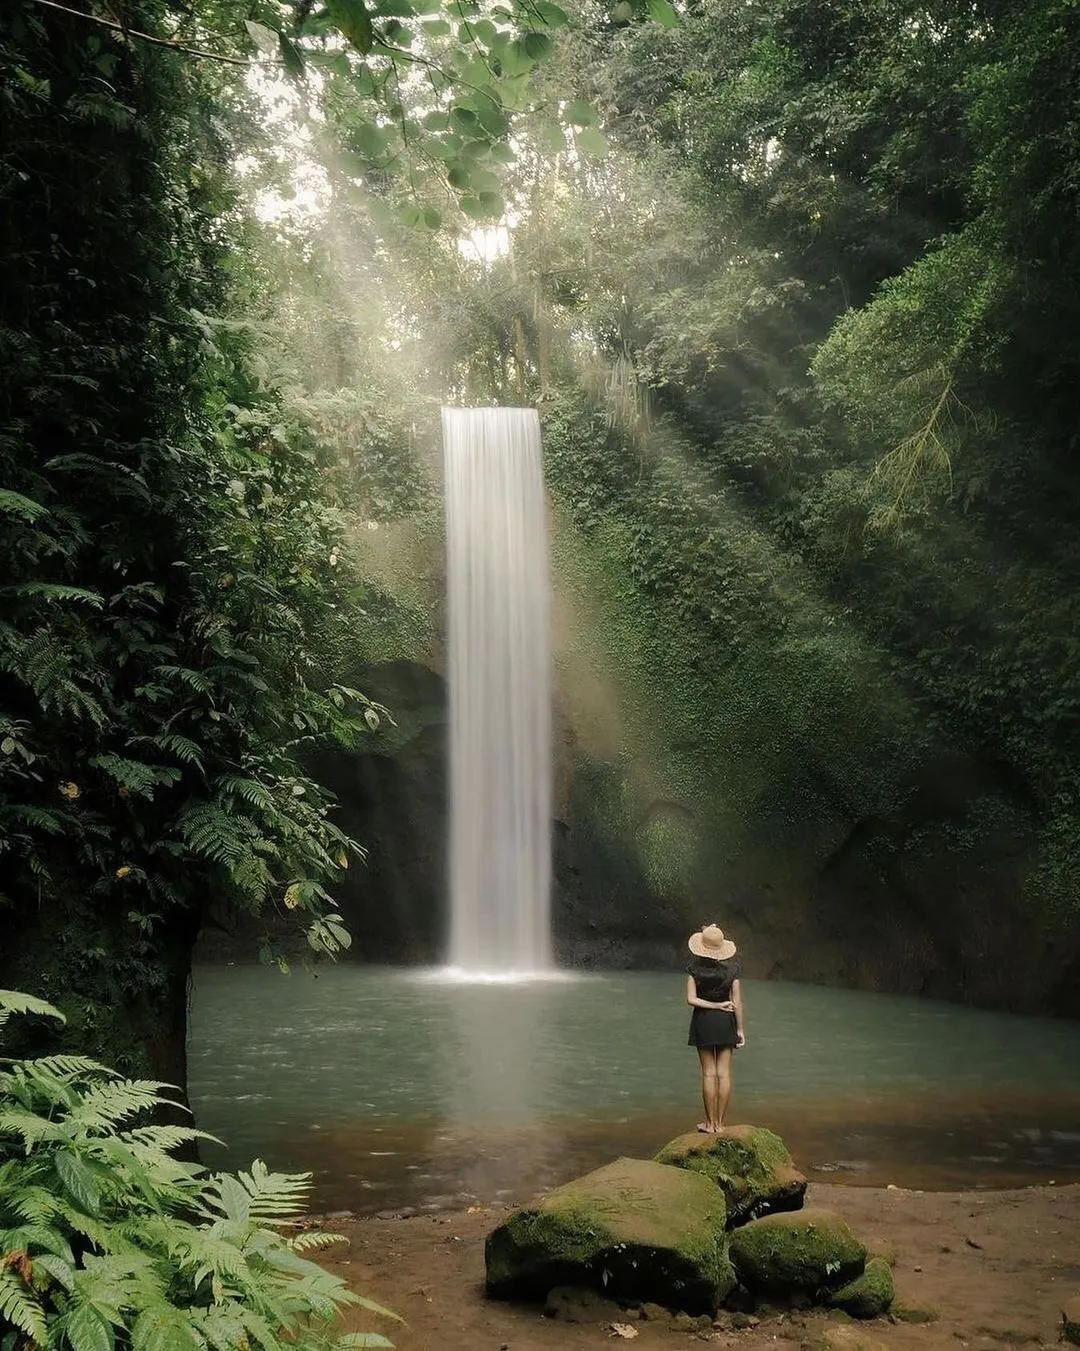 Tibumana Waterfall in Bali